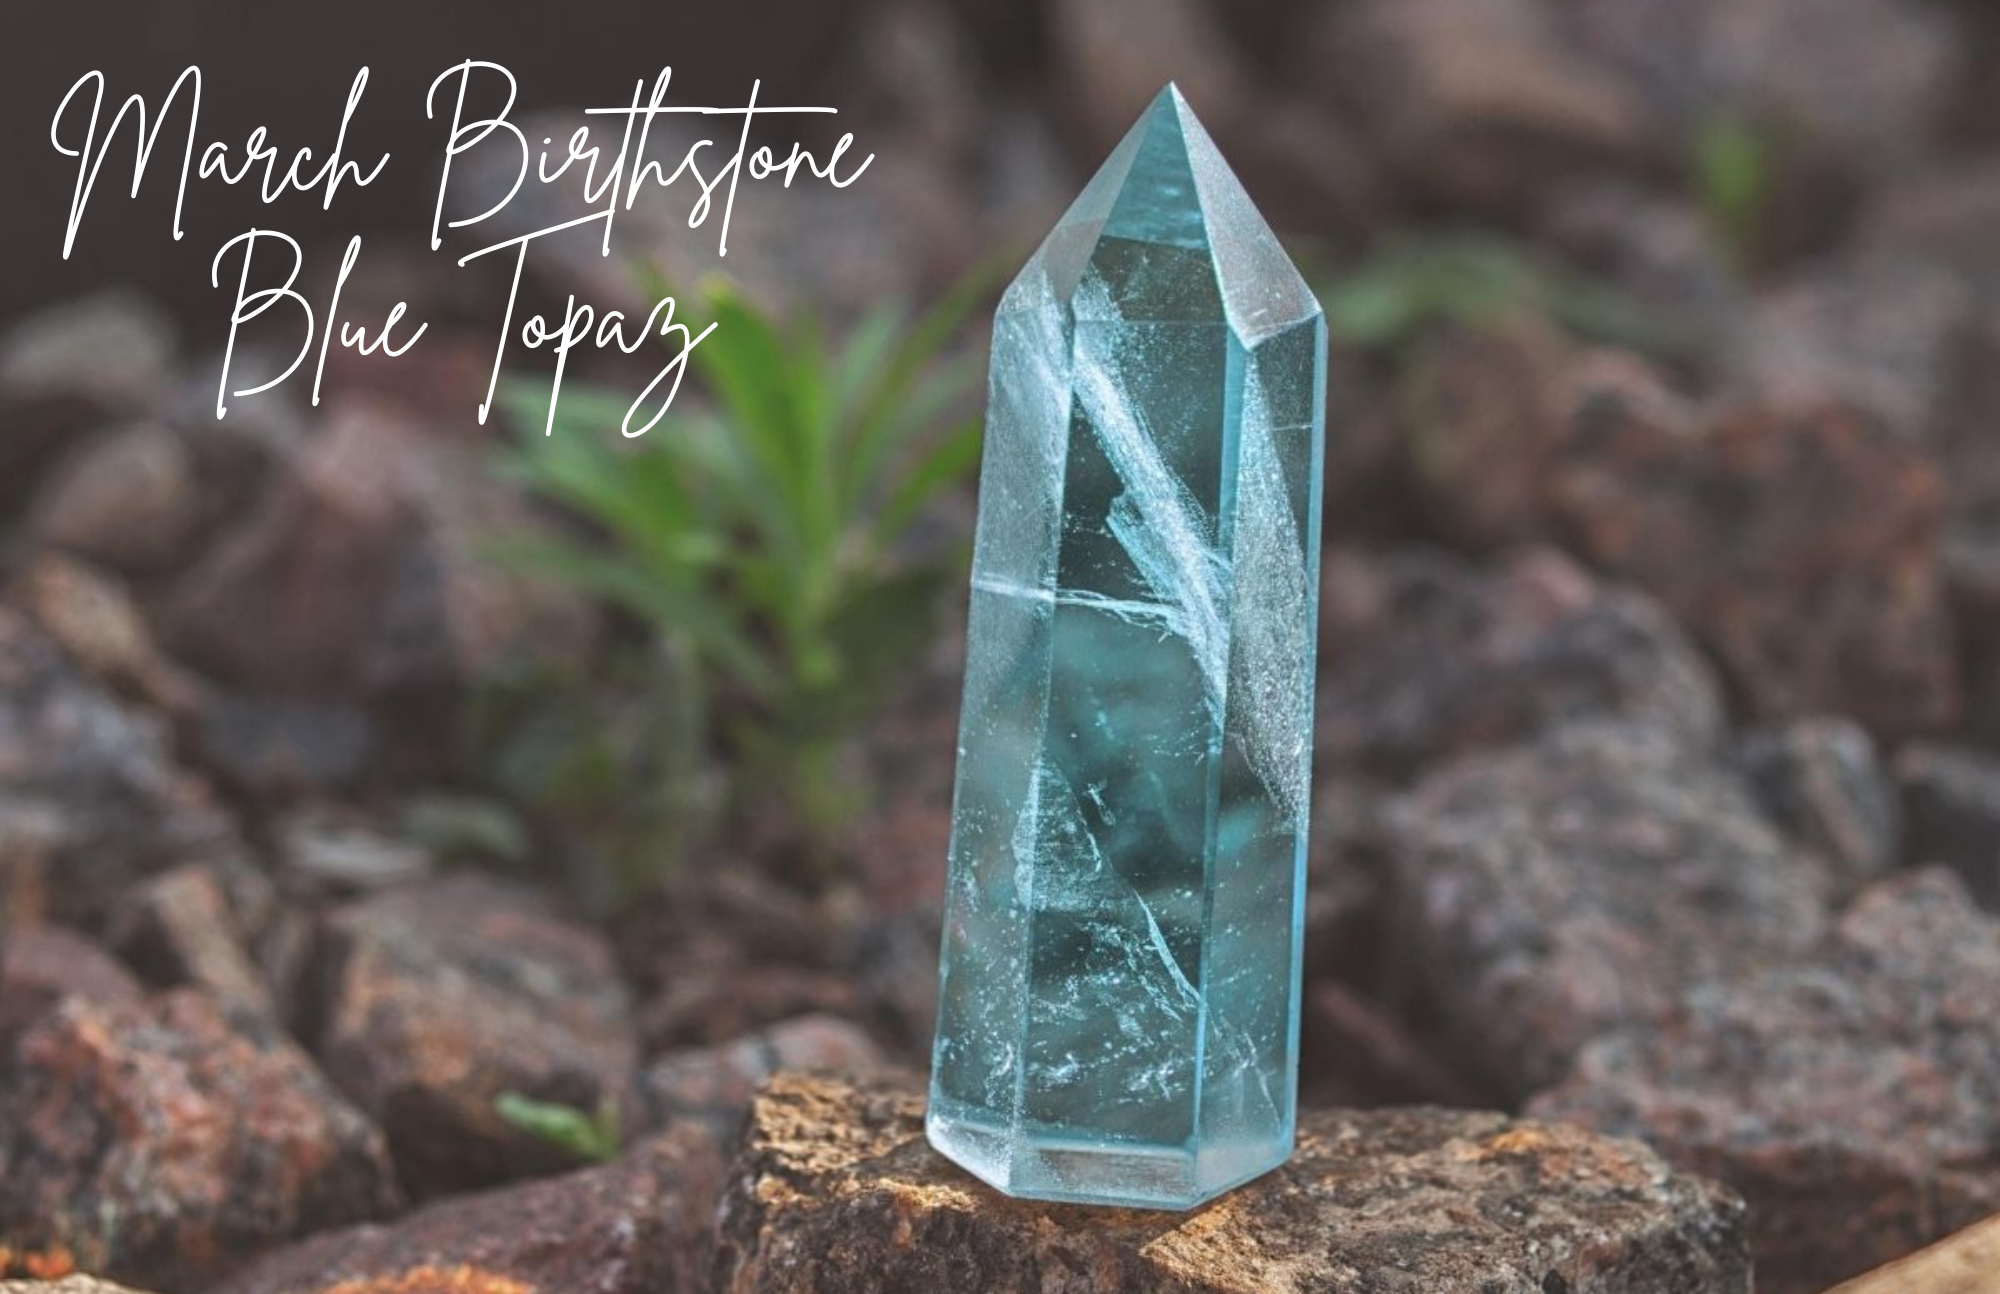 March Birthstone Blue Topaz - A Growing-popular Stone